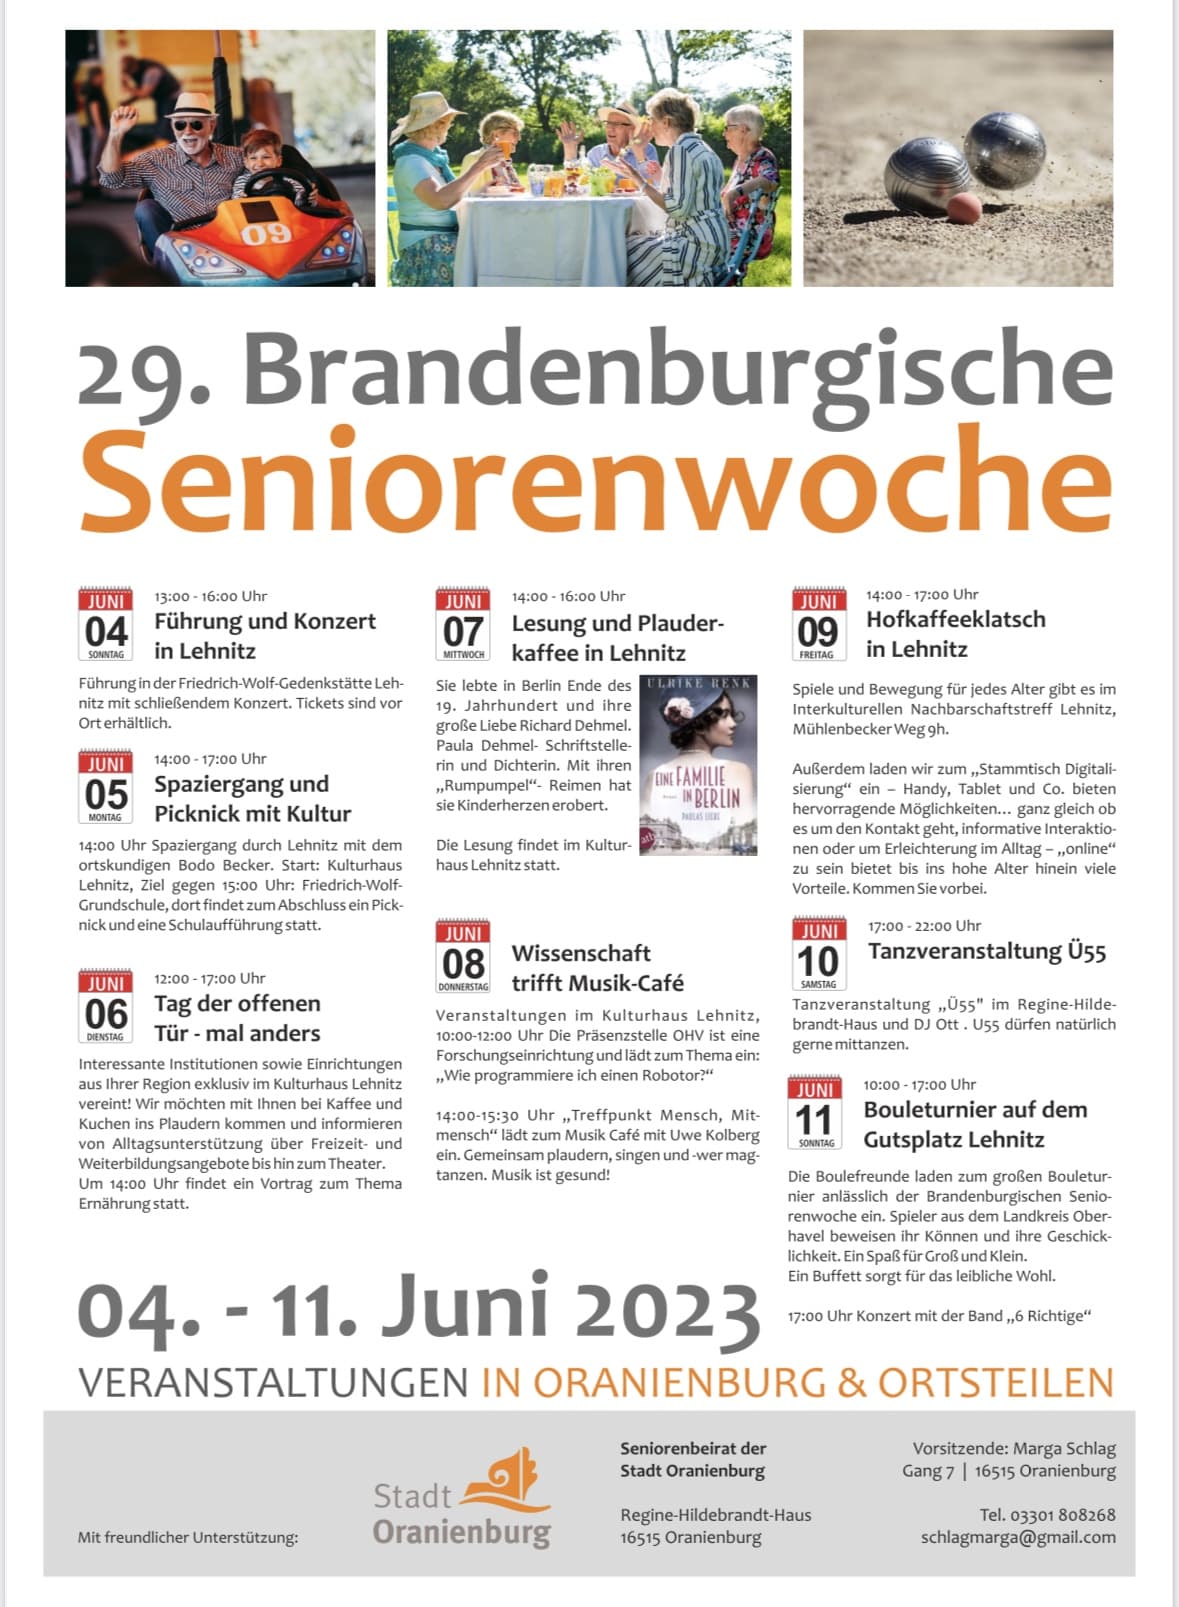 Brandenburgische Seniorenwoche: Führung und Konzert @ Gedenkstätte Friedrich Wolf